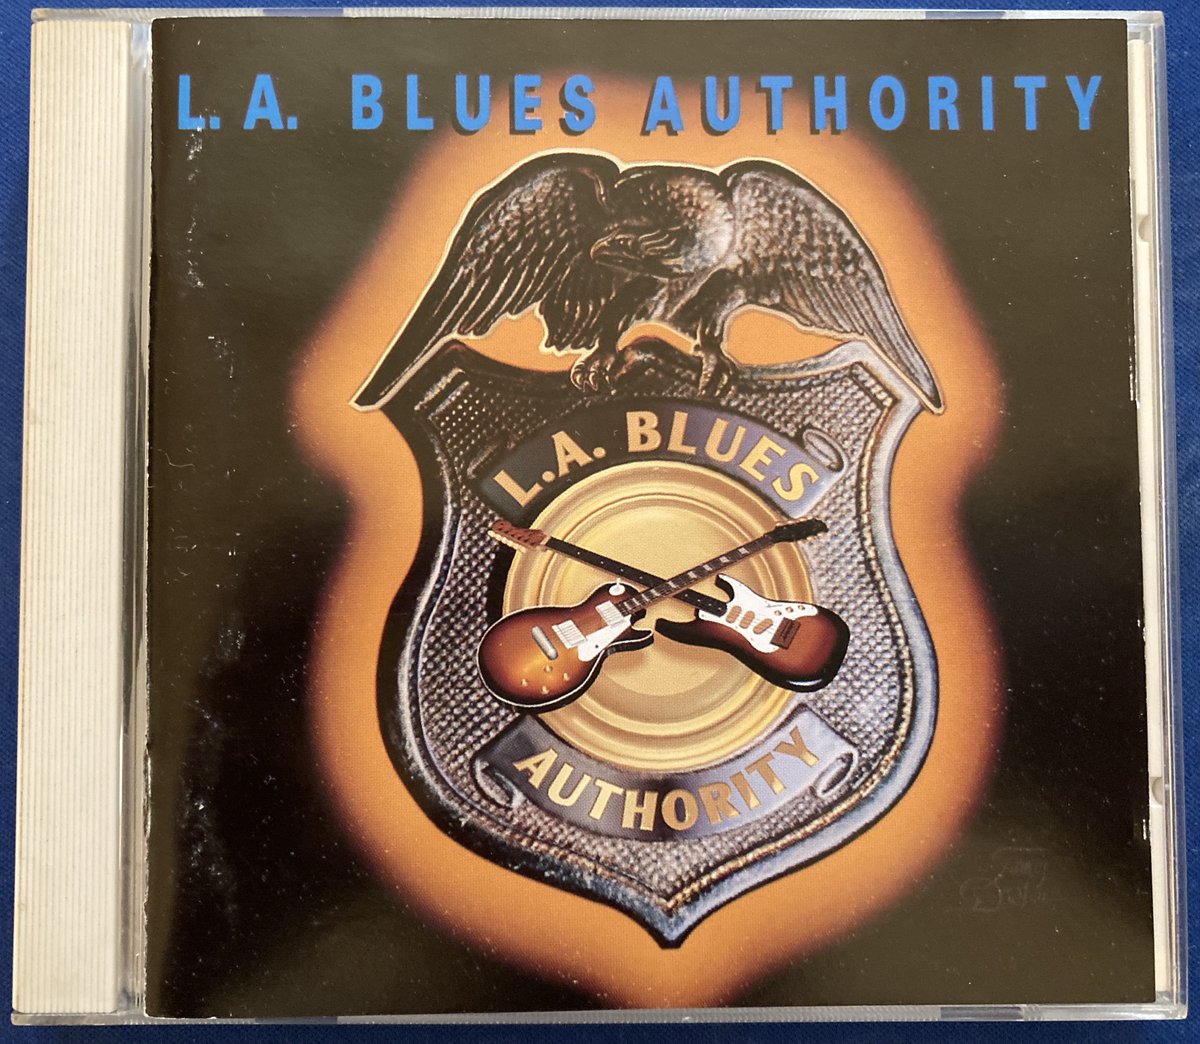 2月3日🎂誕生日
リッチー・コッツェン🎸。
92年『L.A.ブルース・オーソリティ』の
「ハウ・ブルー・キャン・ユー・ゲット」。
ボーカルはクワイエット・ライオットの
ケヴィン・ダブロウ🎤。

＃RichieKotzen ·
＃KevinDubrow
How Blue Can You Get ·  
L.A. Blues Authority
youtu.be/8xQZitH5iF8?si